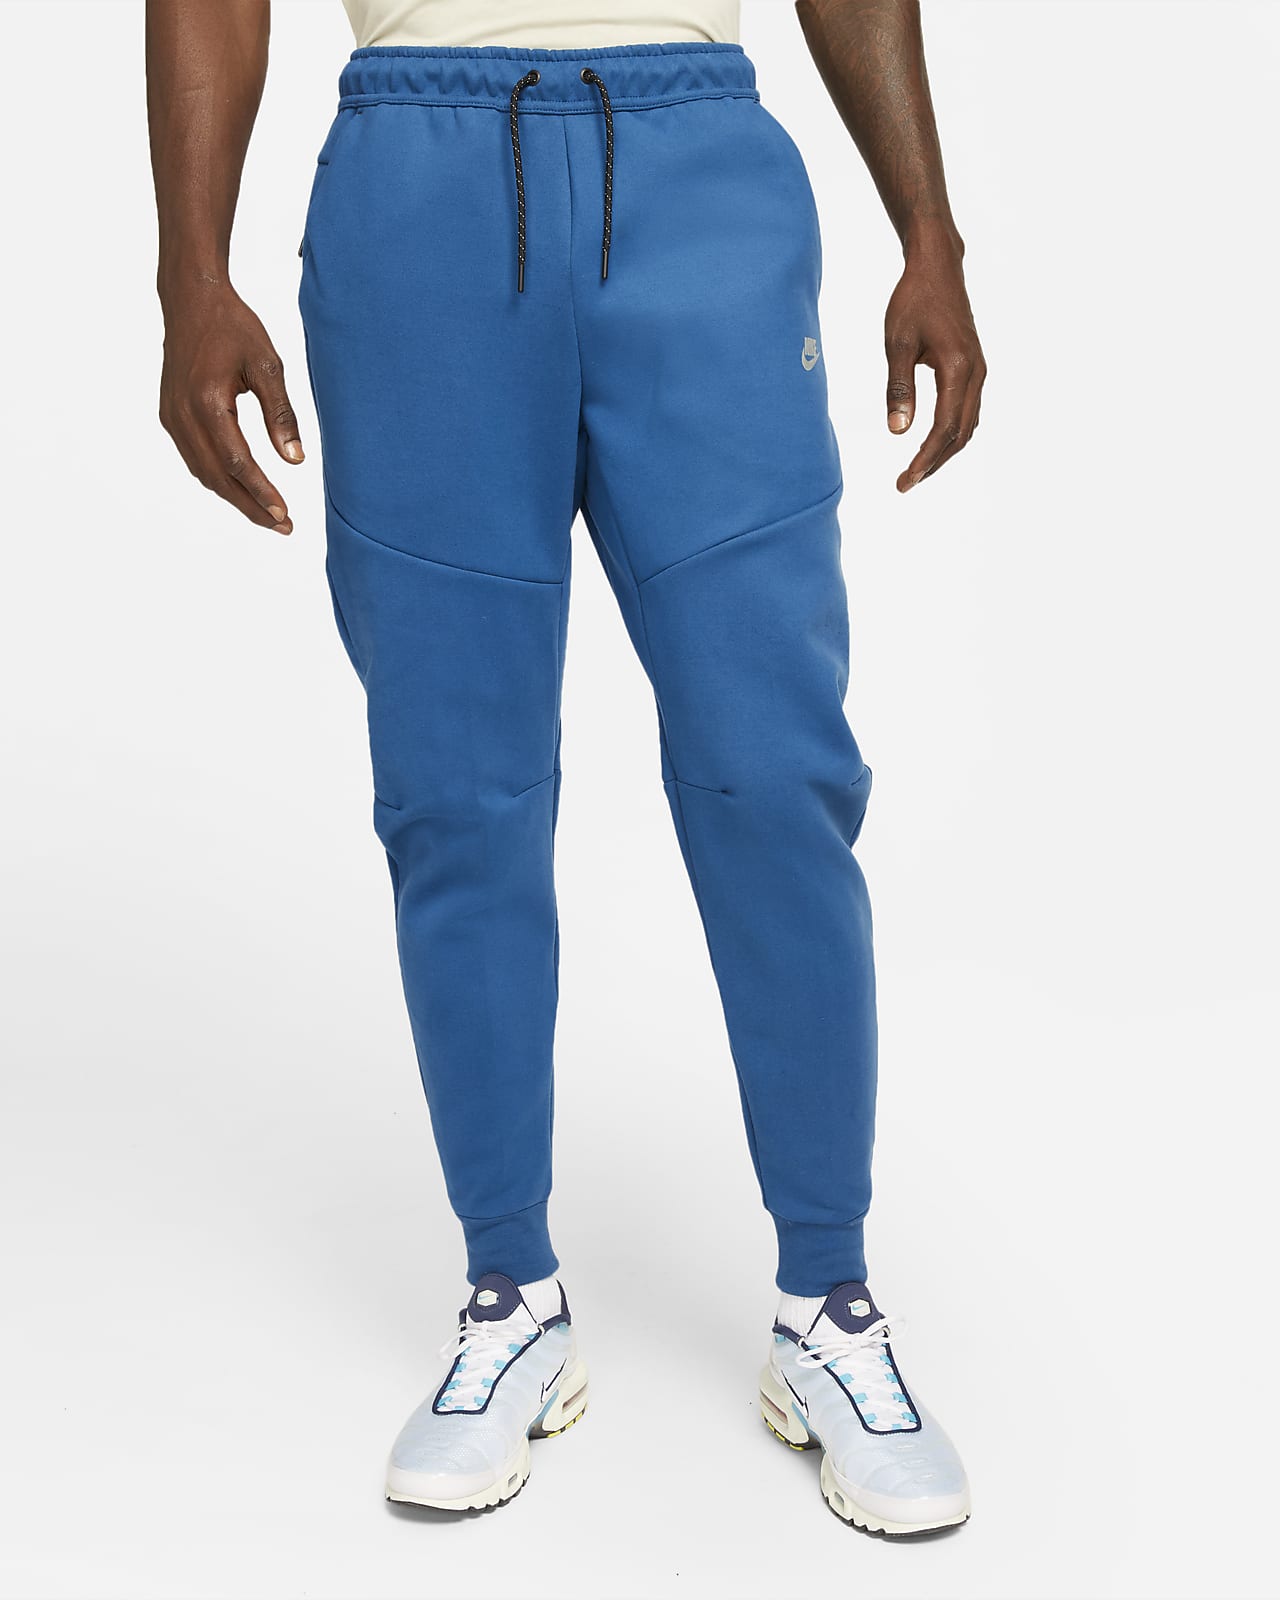 Nike Sportswear Tech Fleece Men's Brushed Joggers